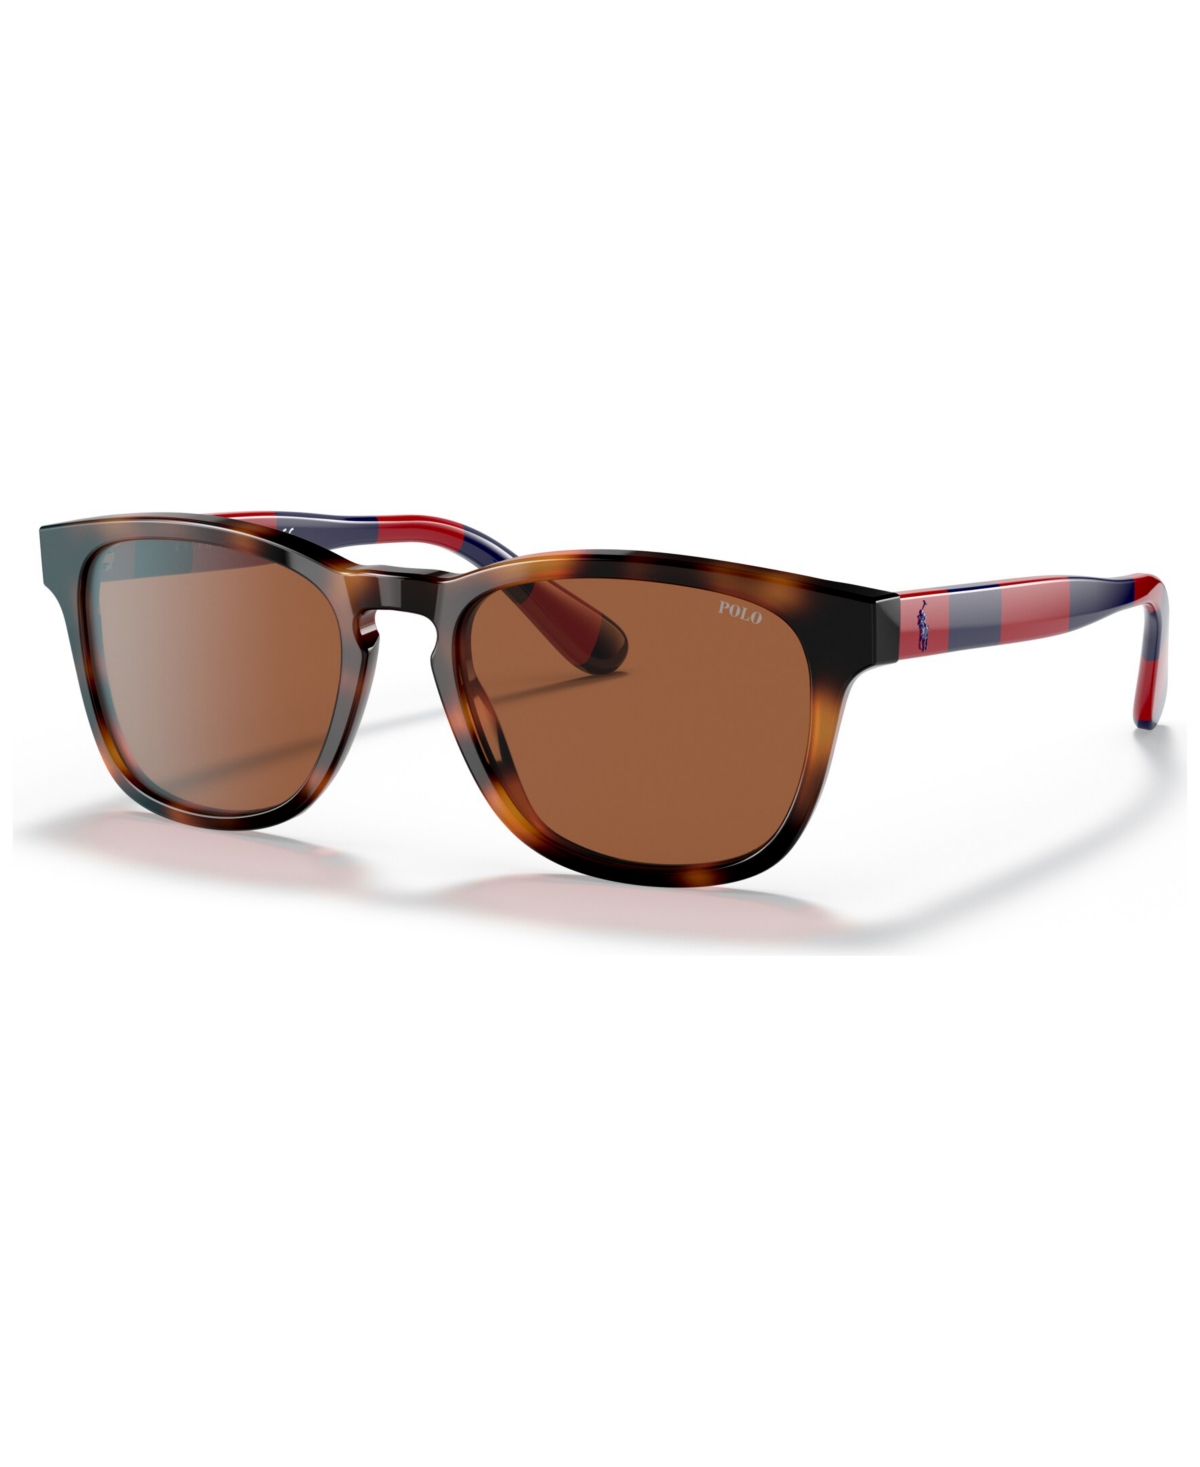 Polo Ralph Lauren Men's Sunglasses, Ph4170 In Shiny Jc Tortoise